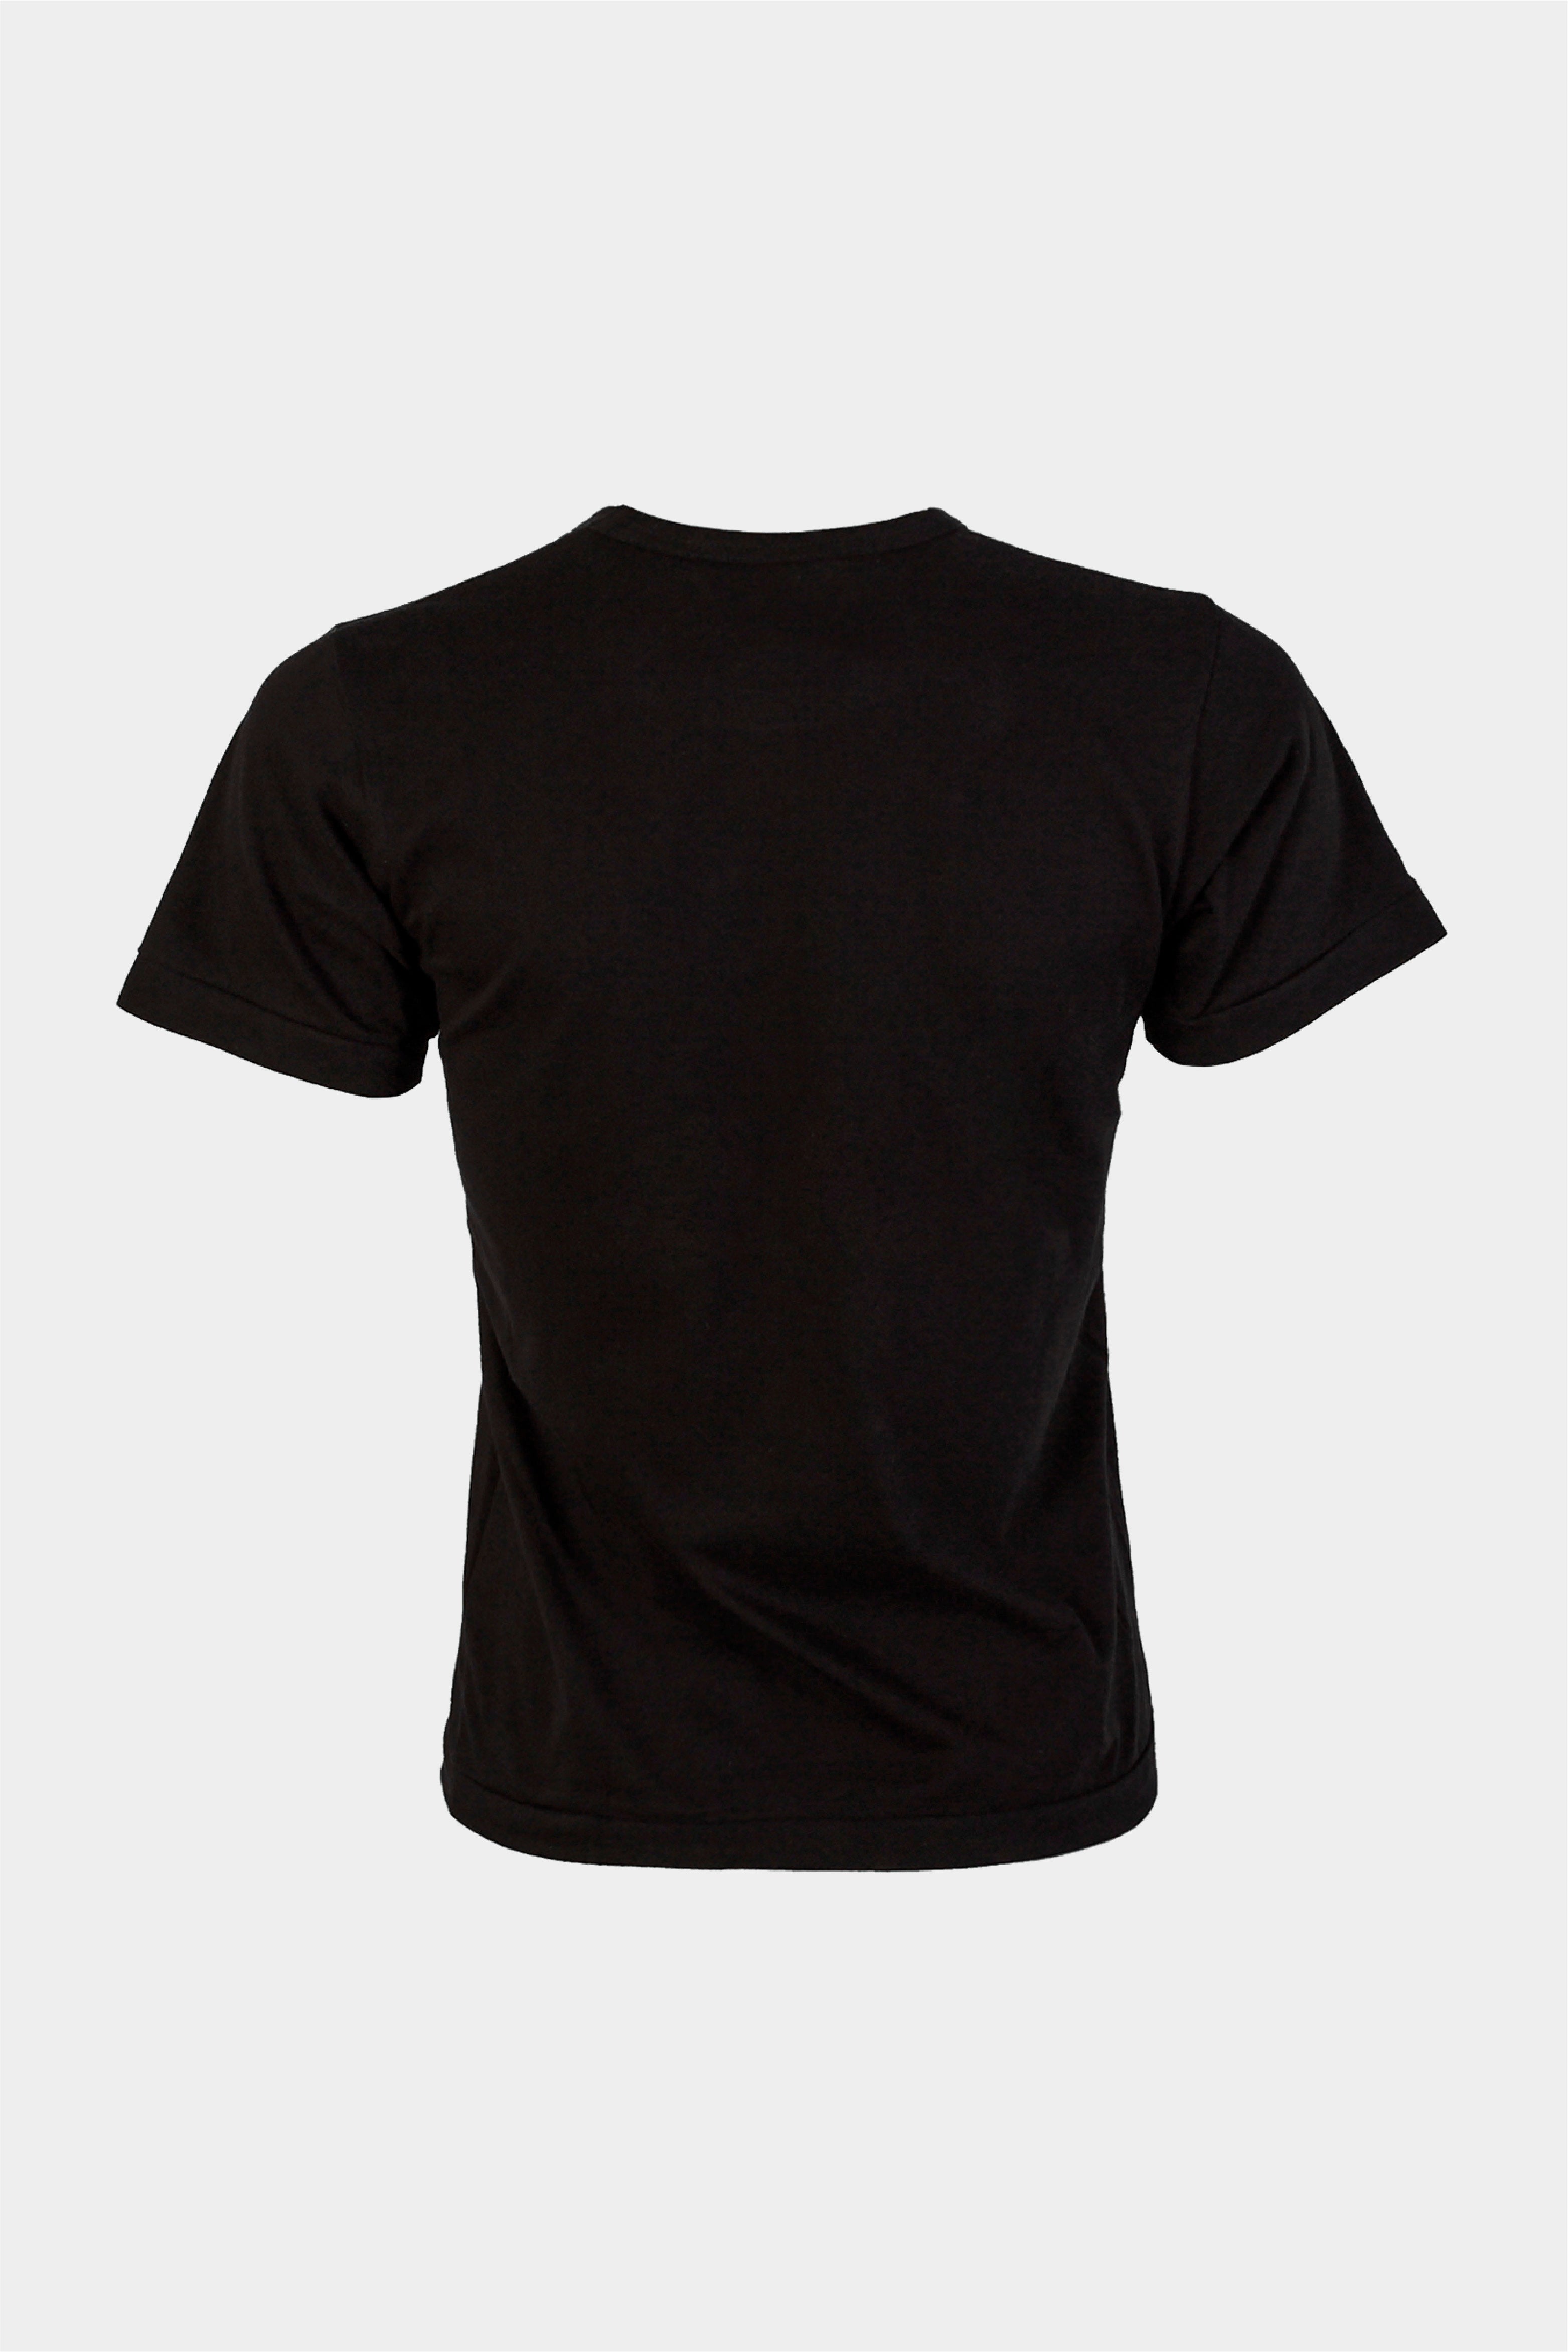 Selectshop FRAME - COMME DES GARÇONS COMME DES GARÇONS Abstraction T-Shirt T-Shirt Concept Store Dubai